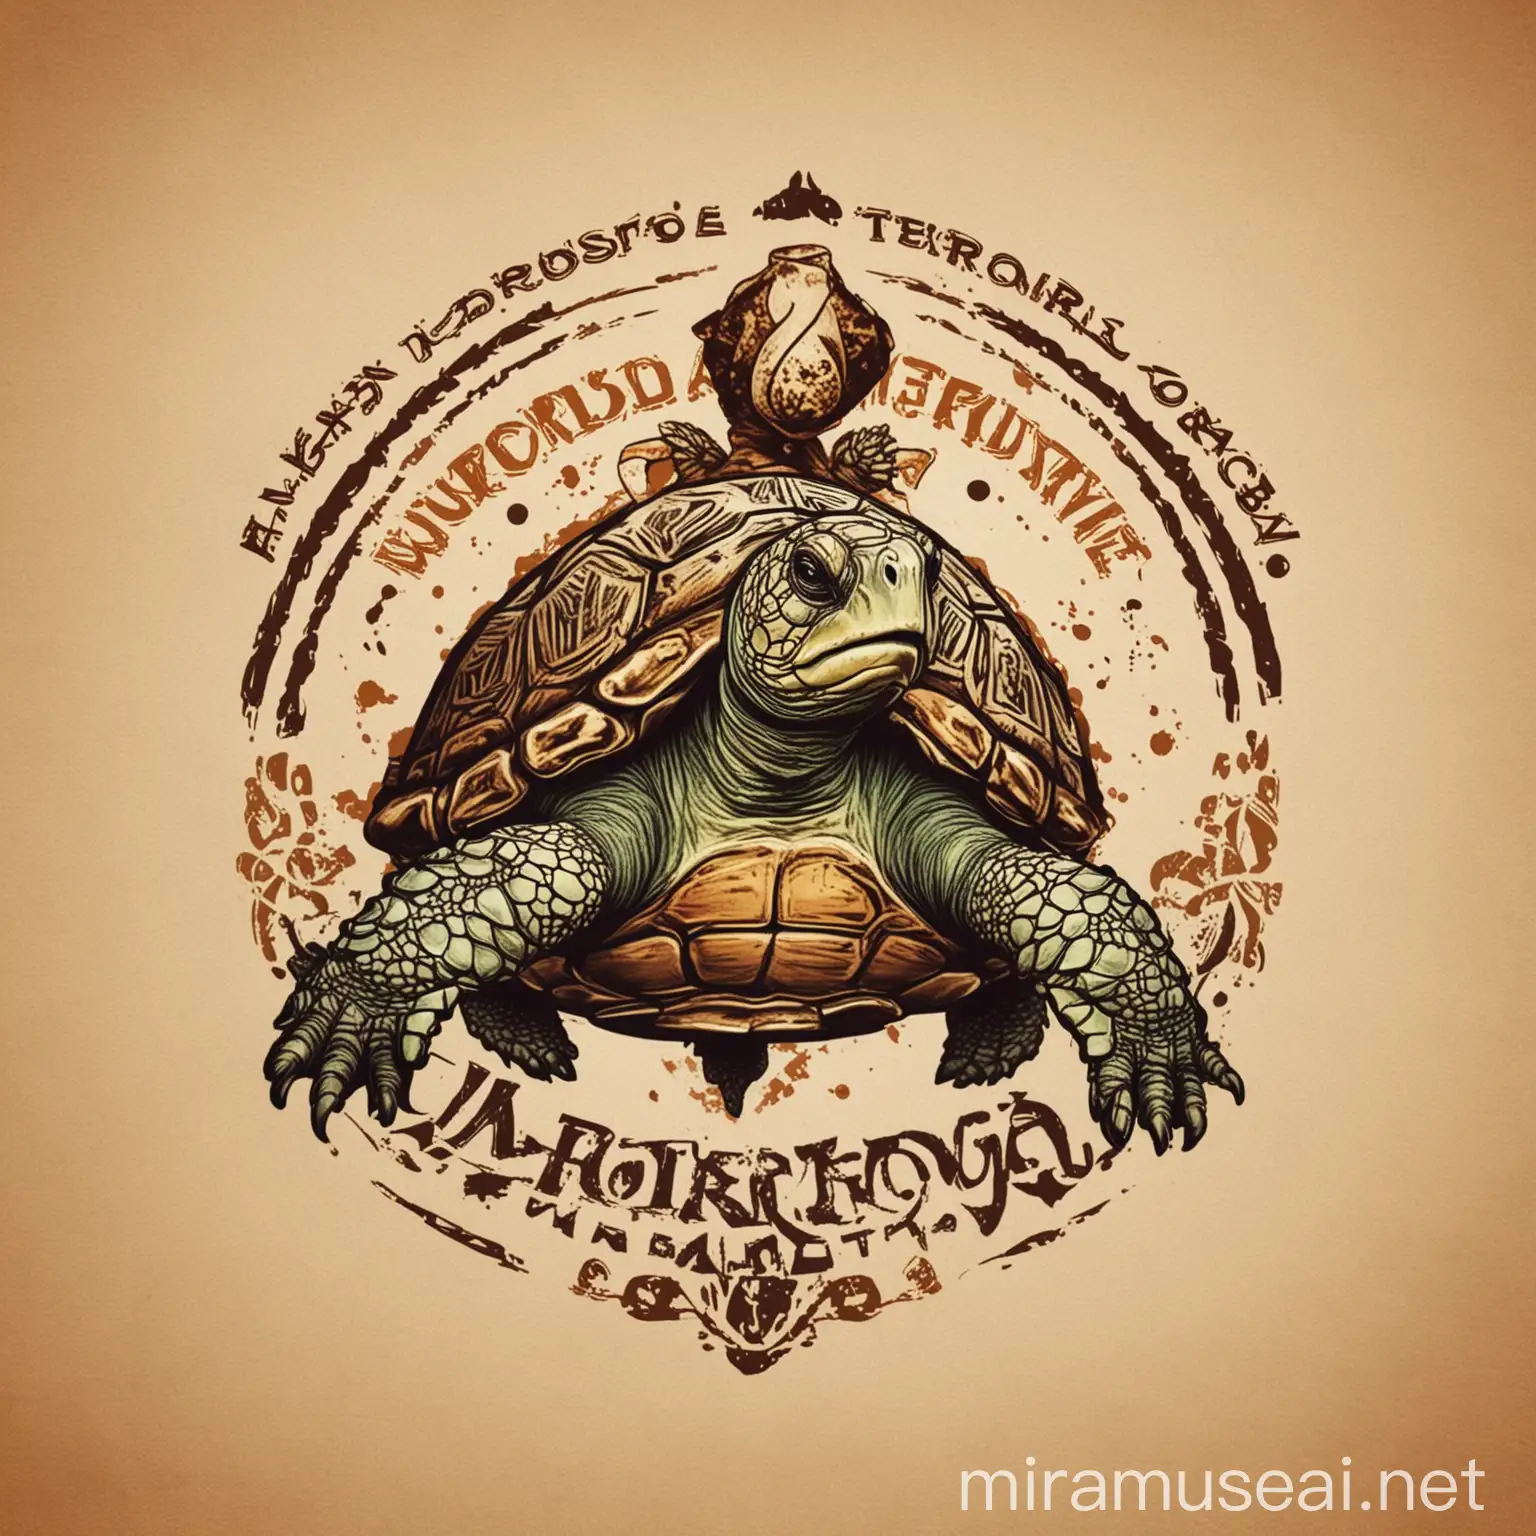 Epic Turtle Logo Design Morrocoya Emblem with Majestic Turtle